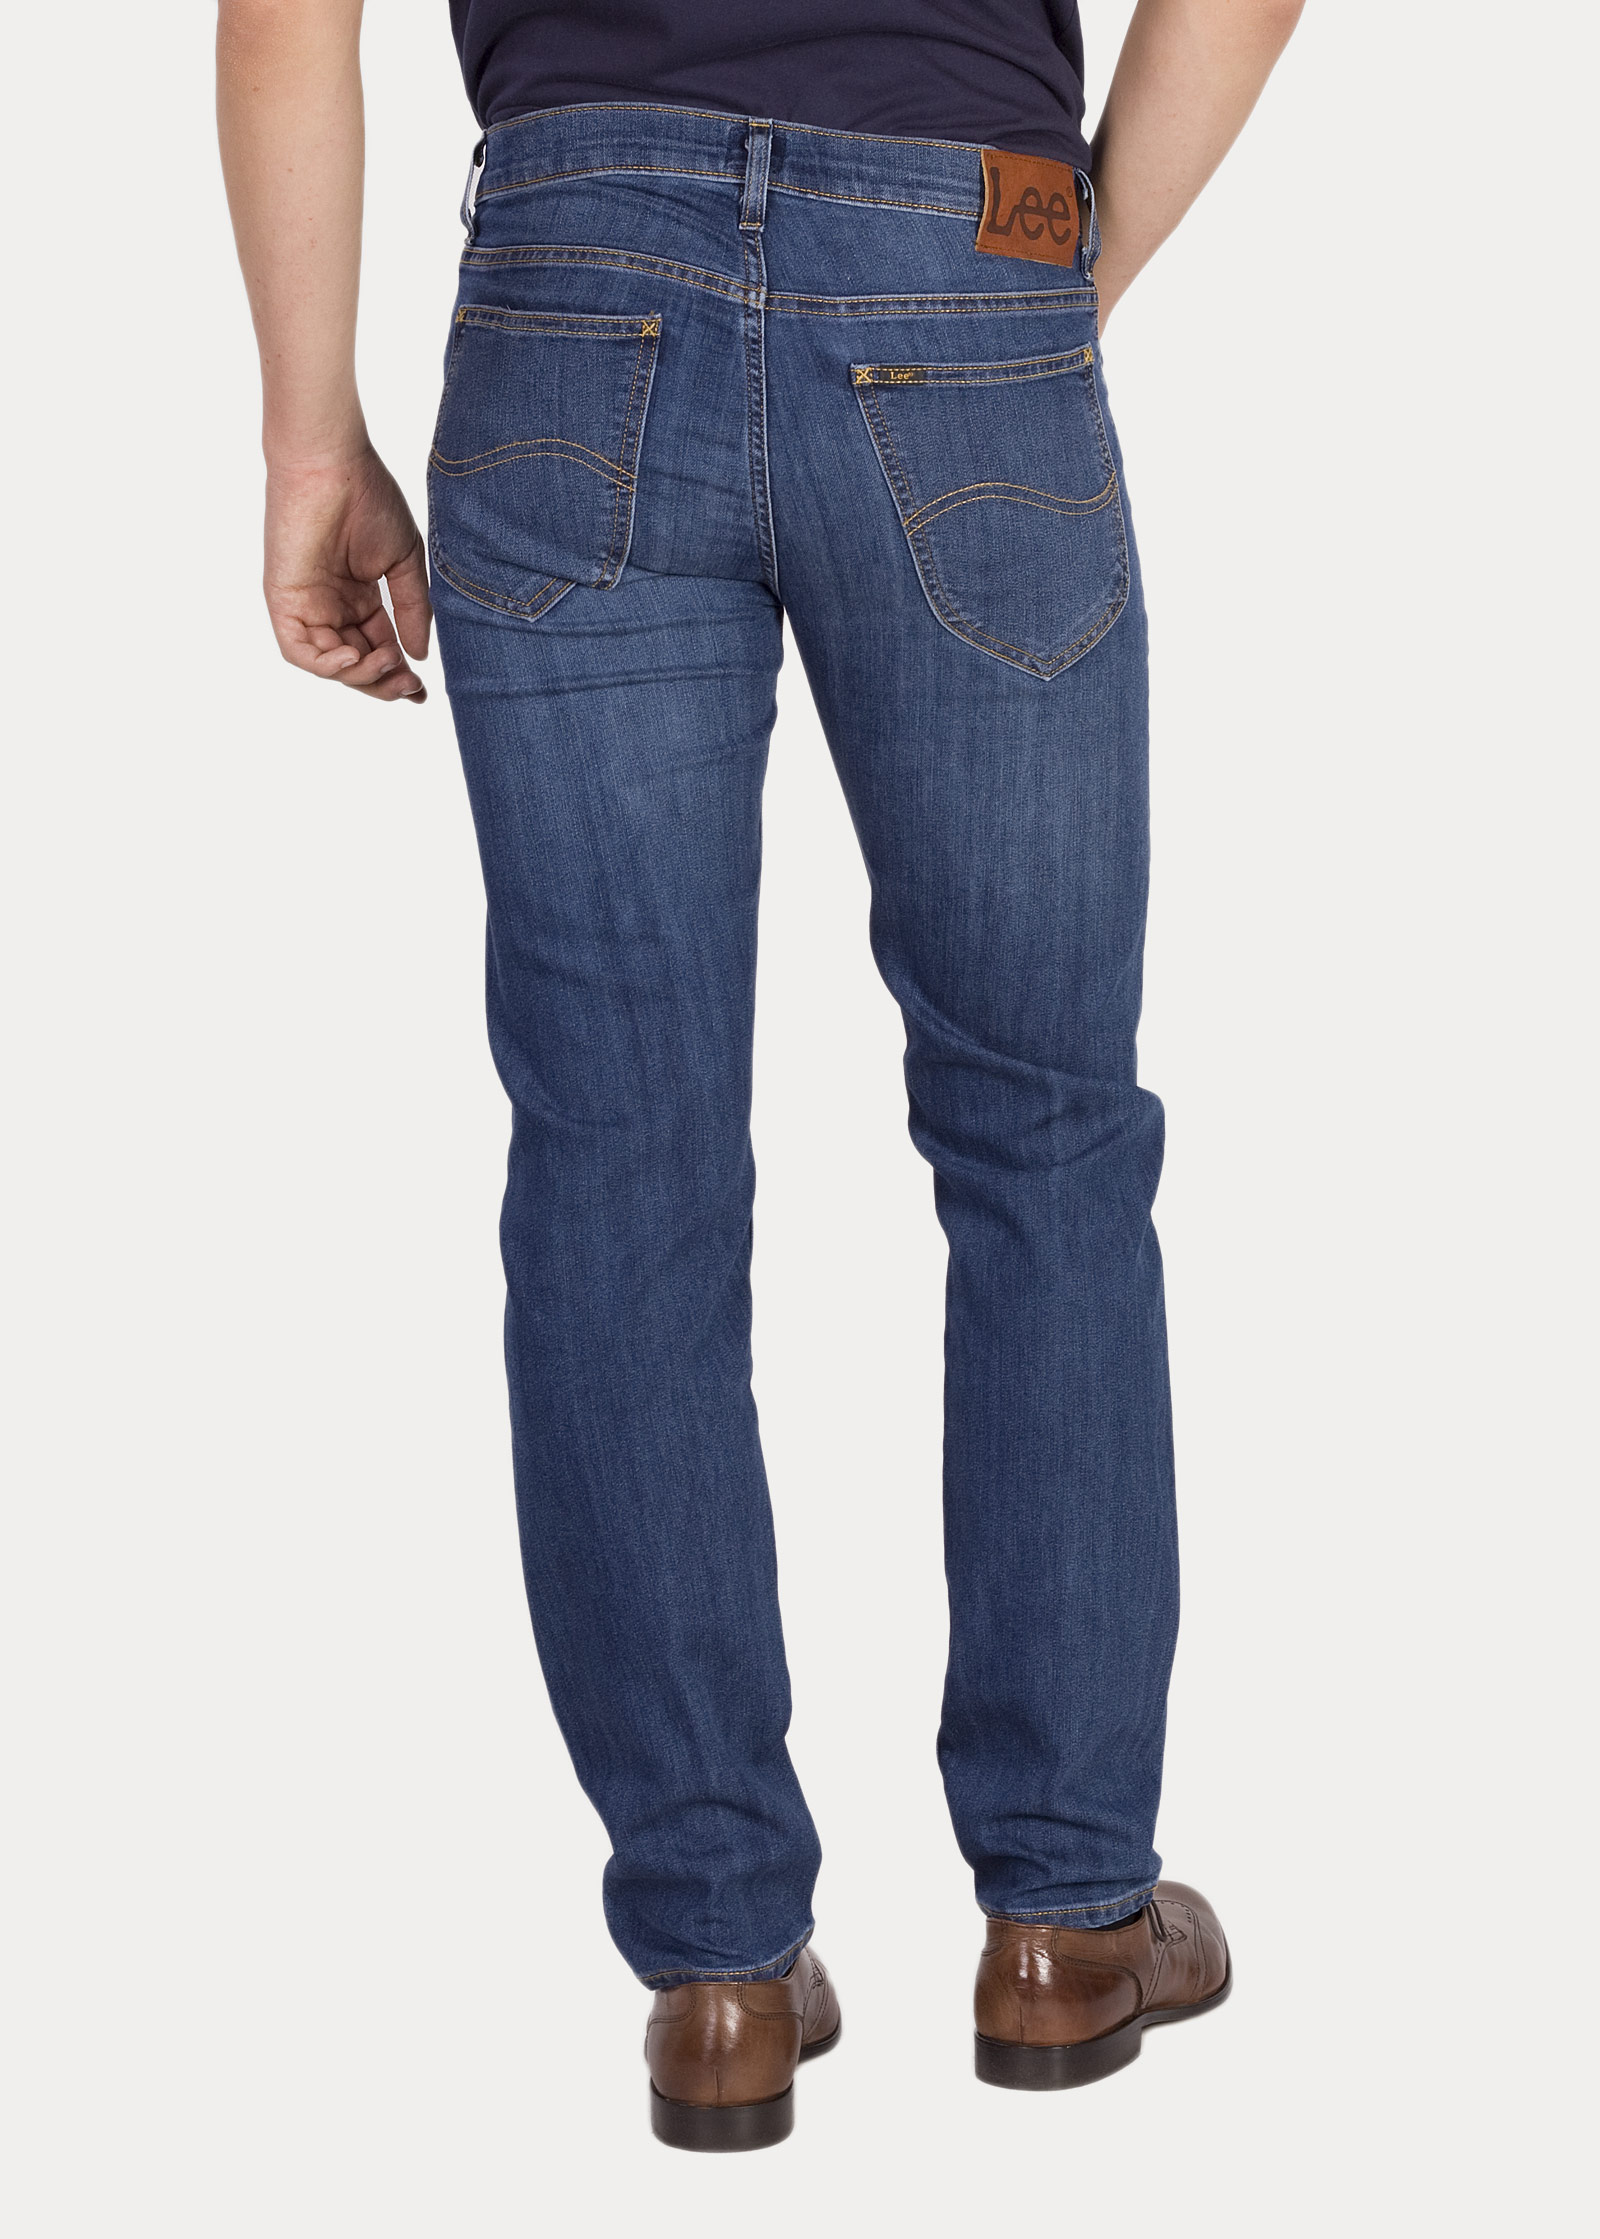 lee jeans daren regular online -